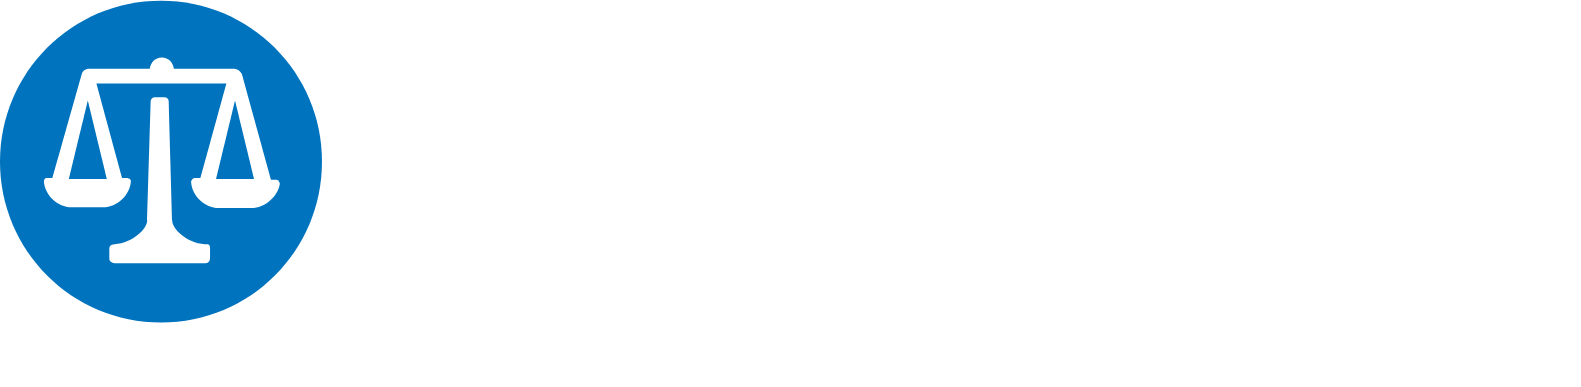 Putnam logo large for dark backgrounds (transparent PNG)